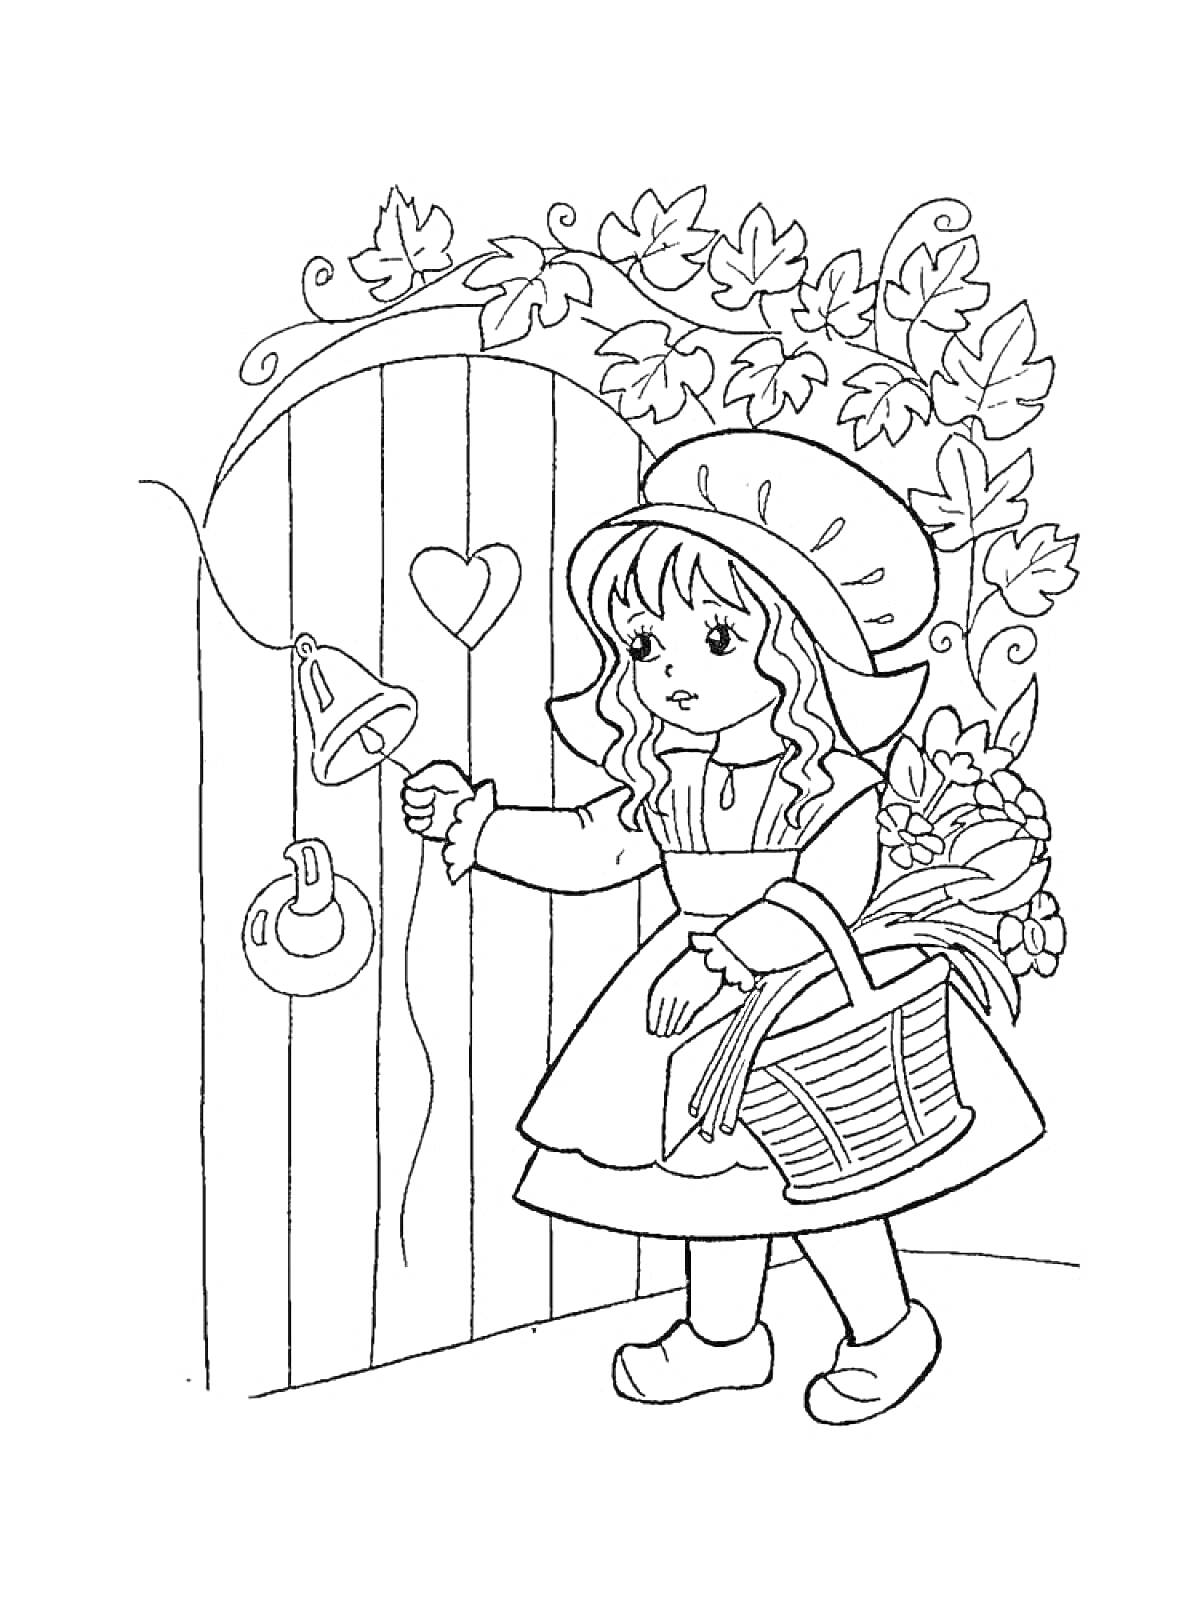 Раскраска Девочка с корзиной перед дверью с колокольчиком и листиками